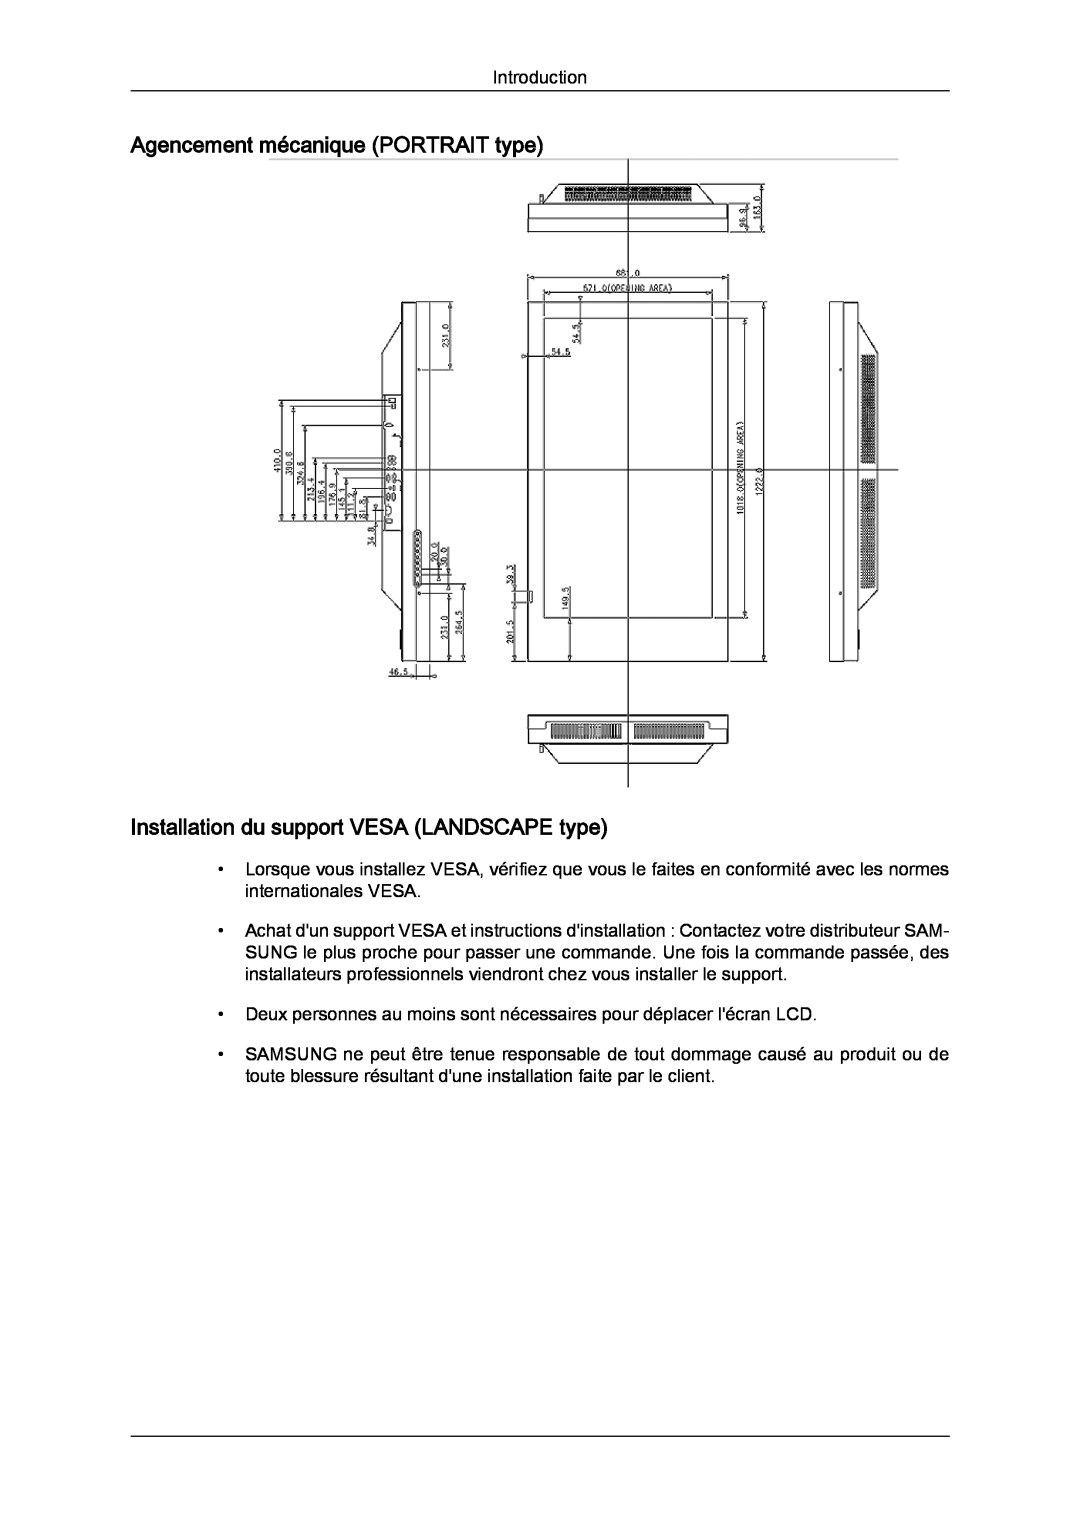 Samsung LH46SOUMSC/EN, LH46SOUQSC/EN manual Agencement mécanique PORTRAIT type, Installation du support VESA LANDSCAPE type 